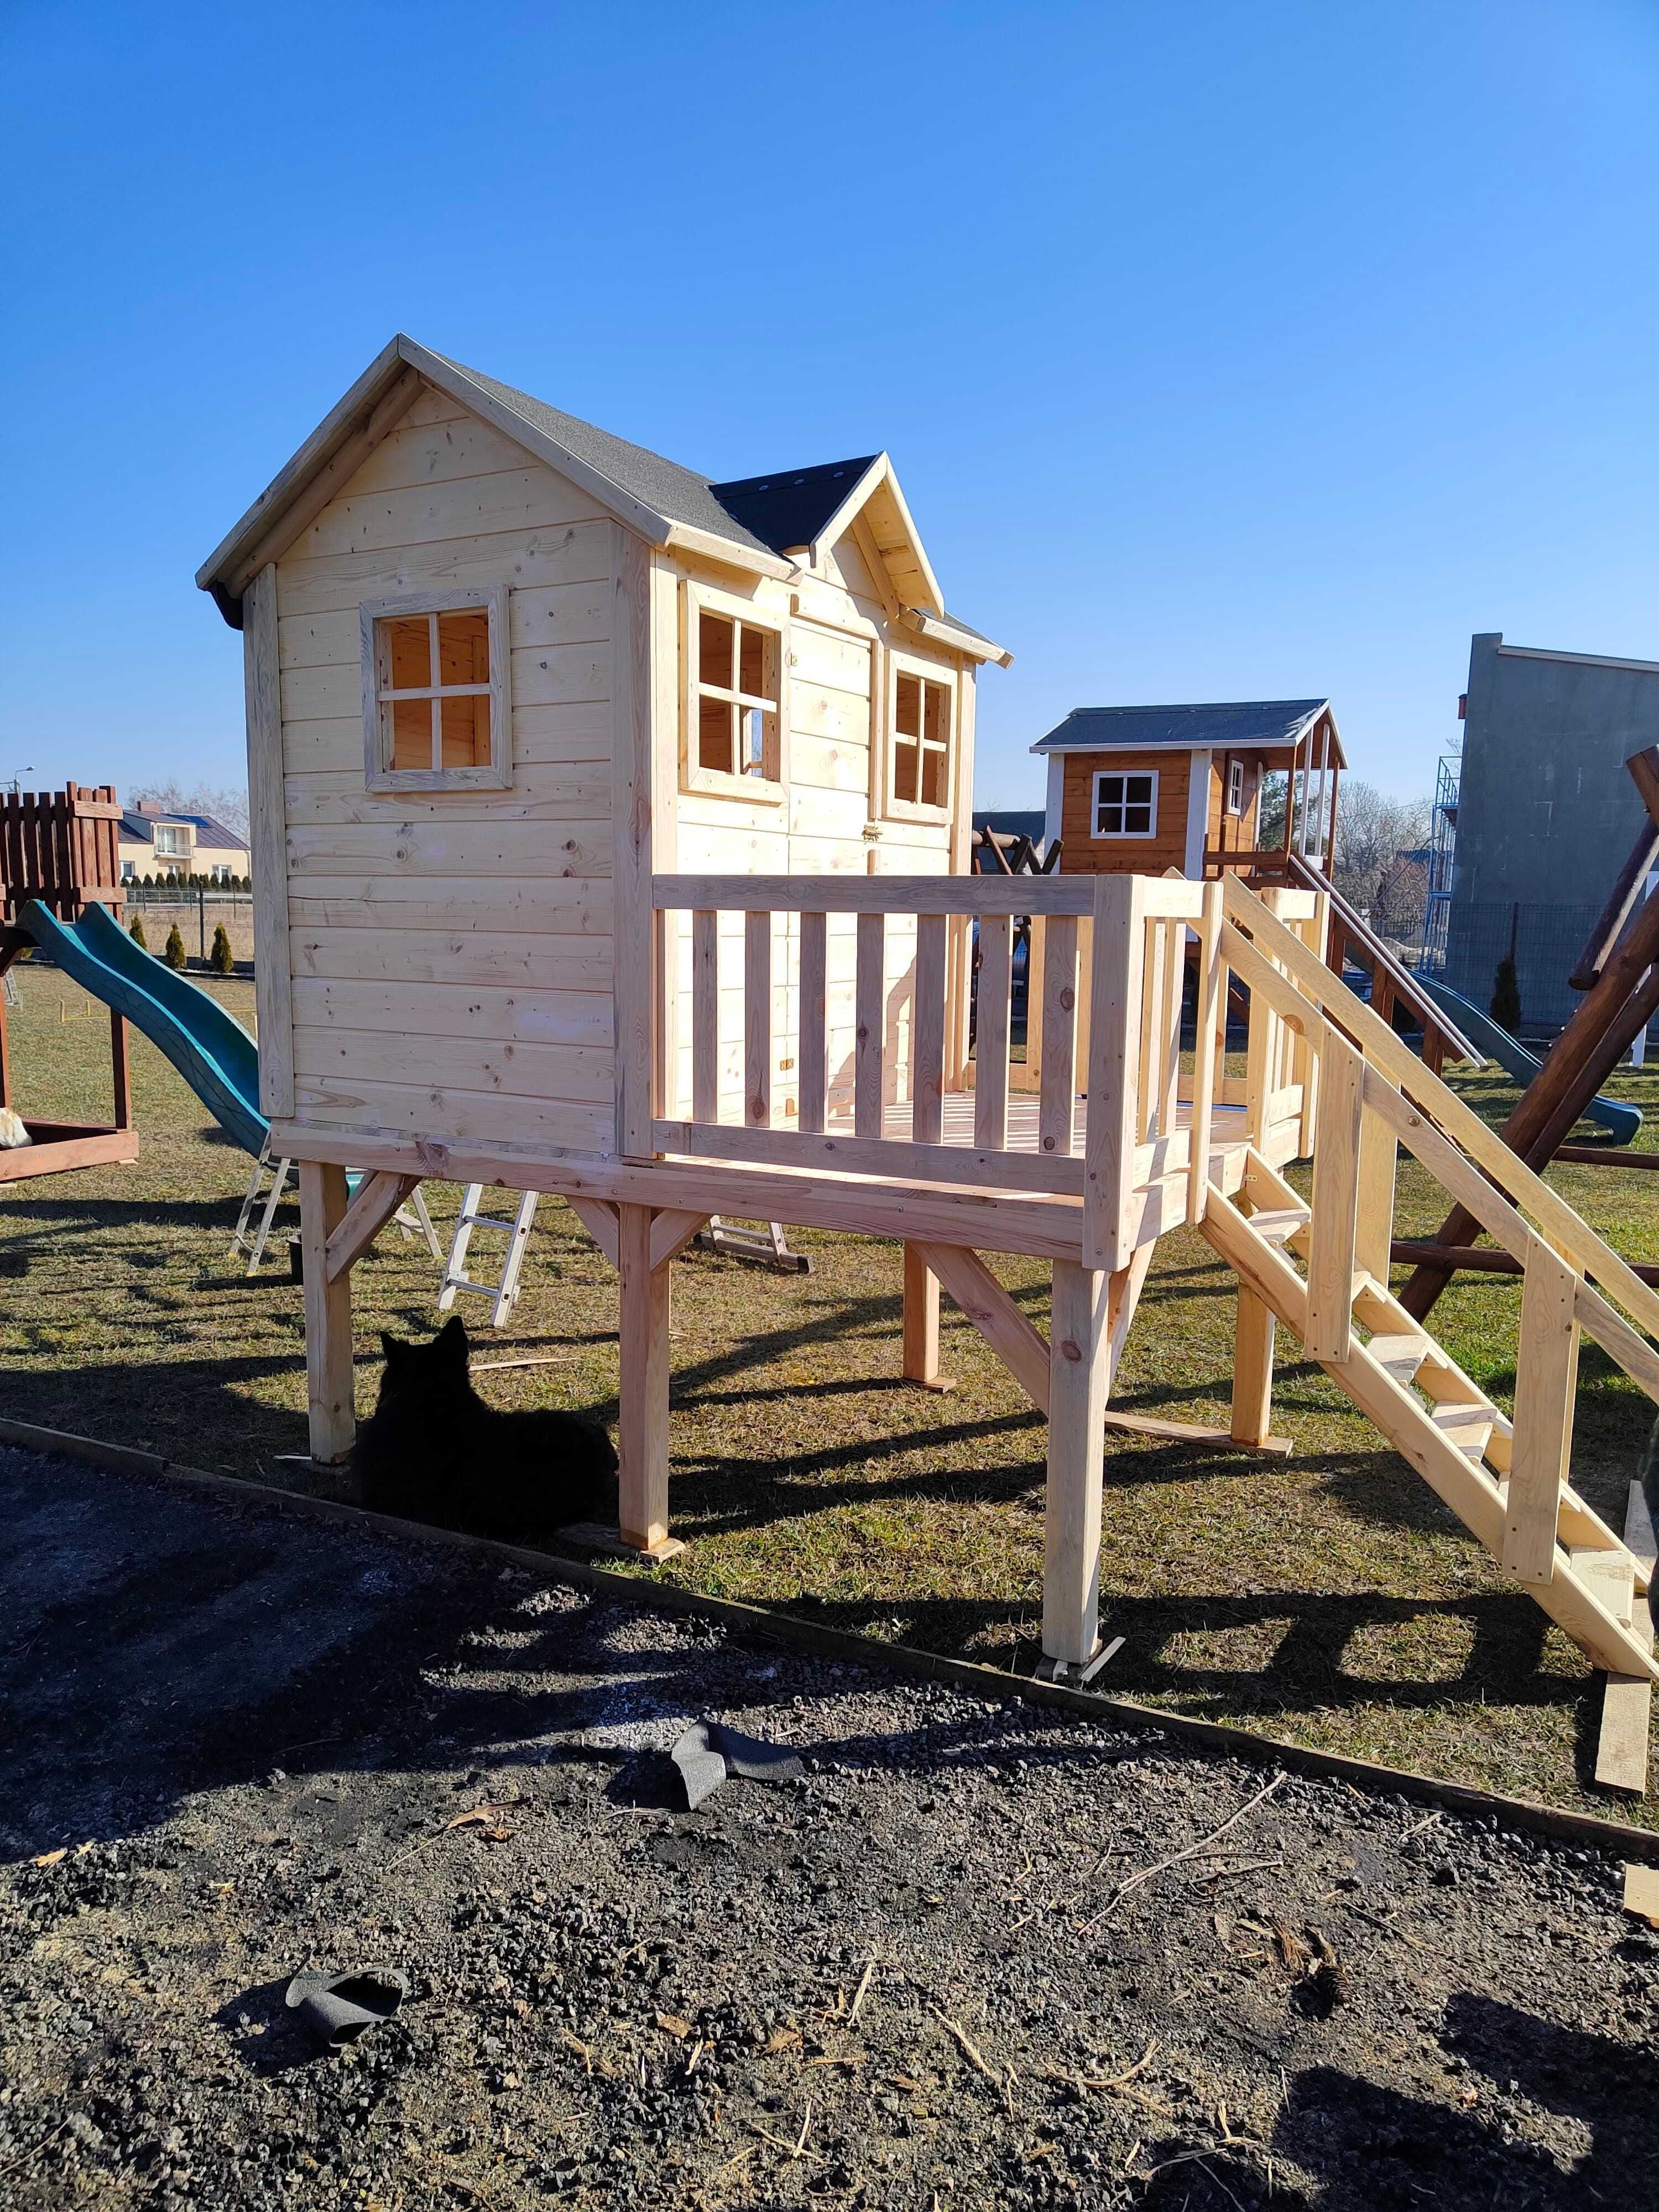 Daria drewniany domek dla dzieci producent plac zabaw